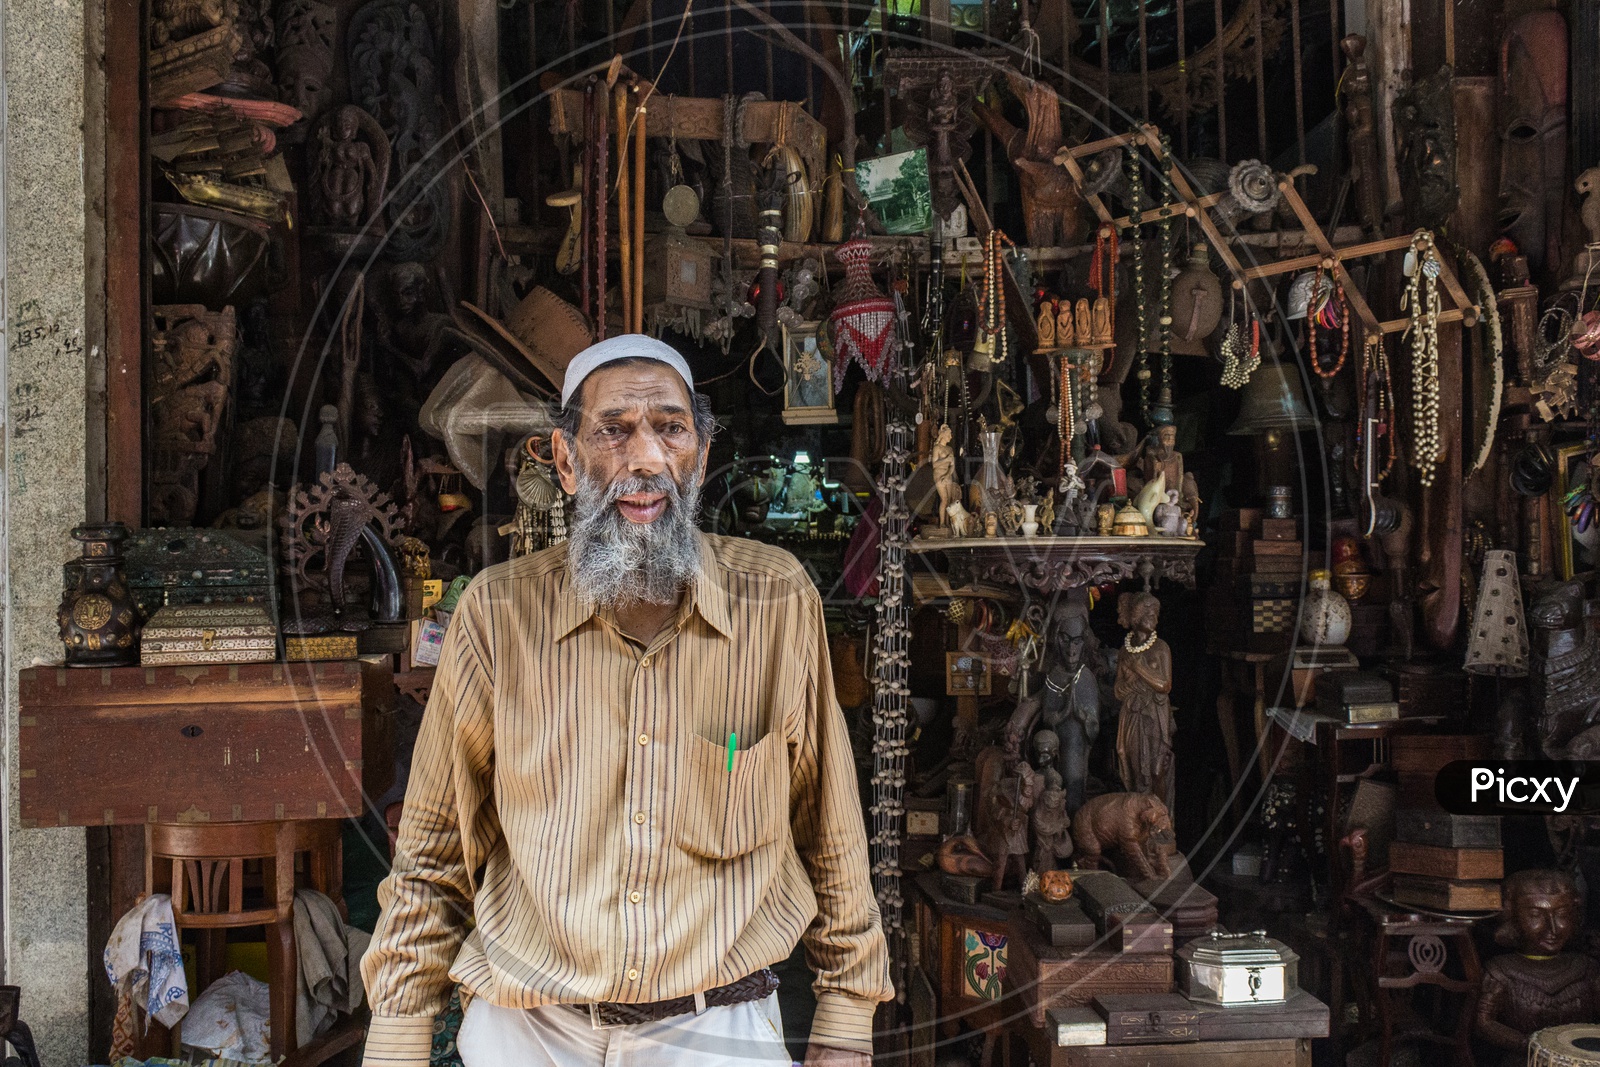 An antique shop owner